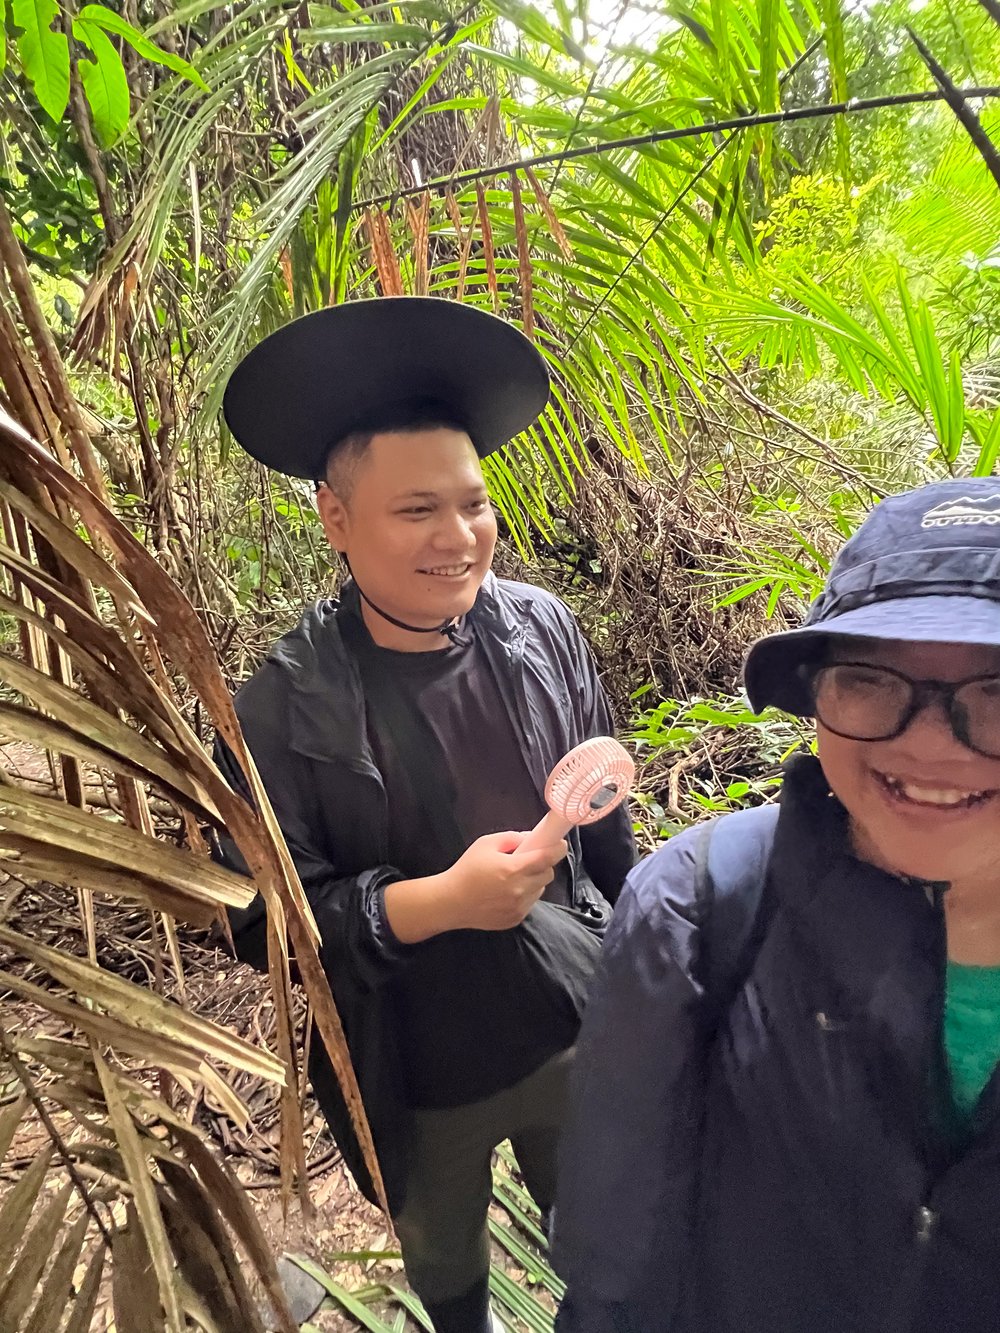 Tien visits a jungle